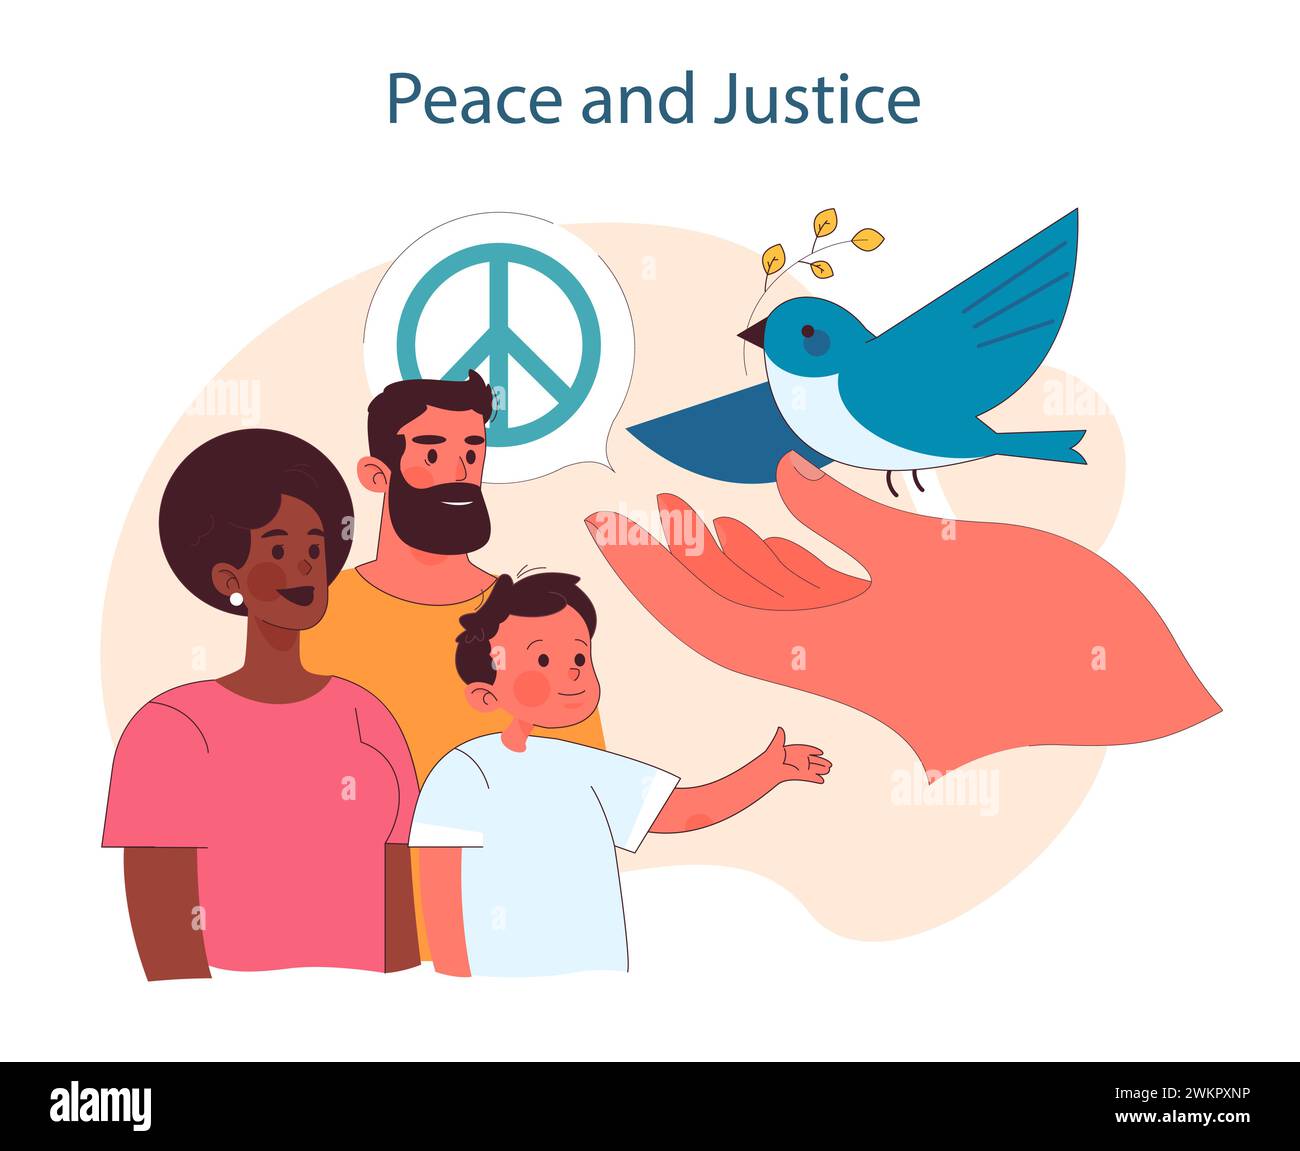 Frieden und Gerechtigkeit. Förderung globaler Harmonie und rechtmäßiger Gerechtigkeit. Wahrzeichen der Ruhe für den gesellschaftlichen Zusammenhalt. Illustration des flachen Vektors Stock Vektor